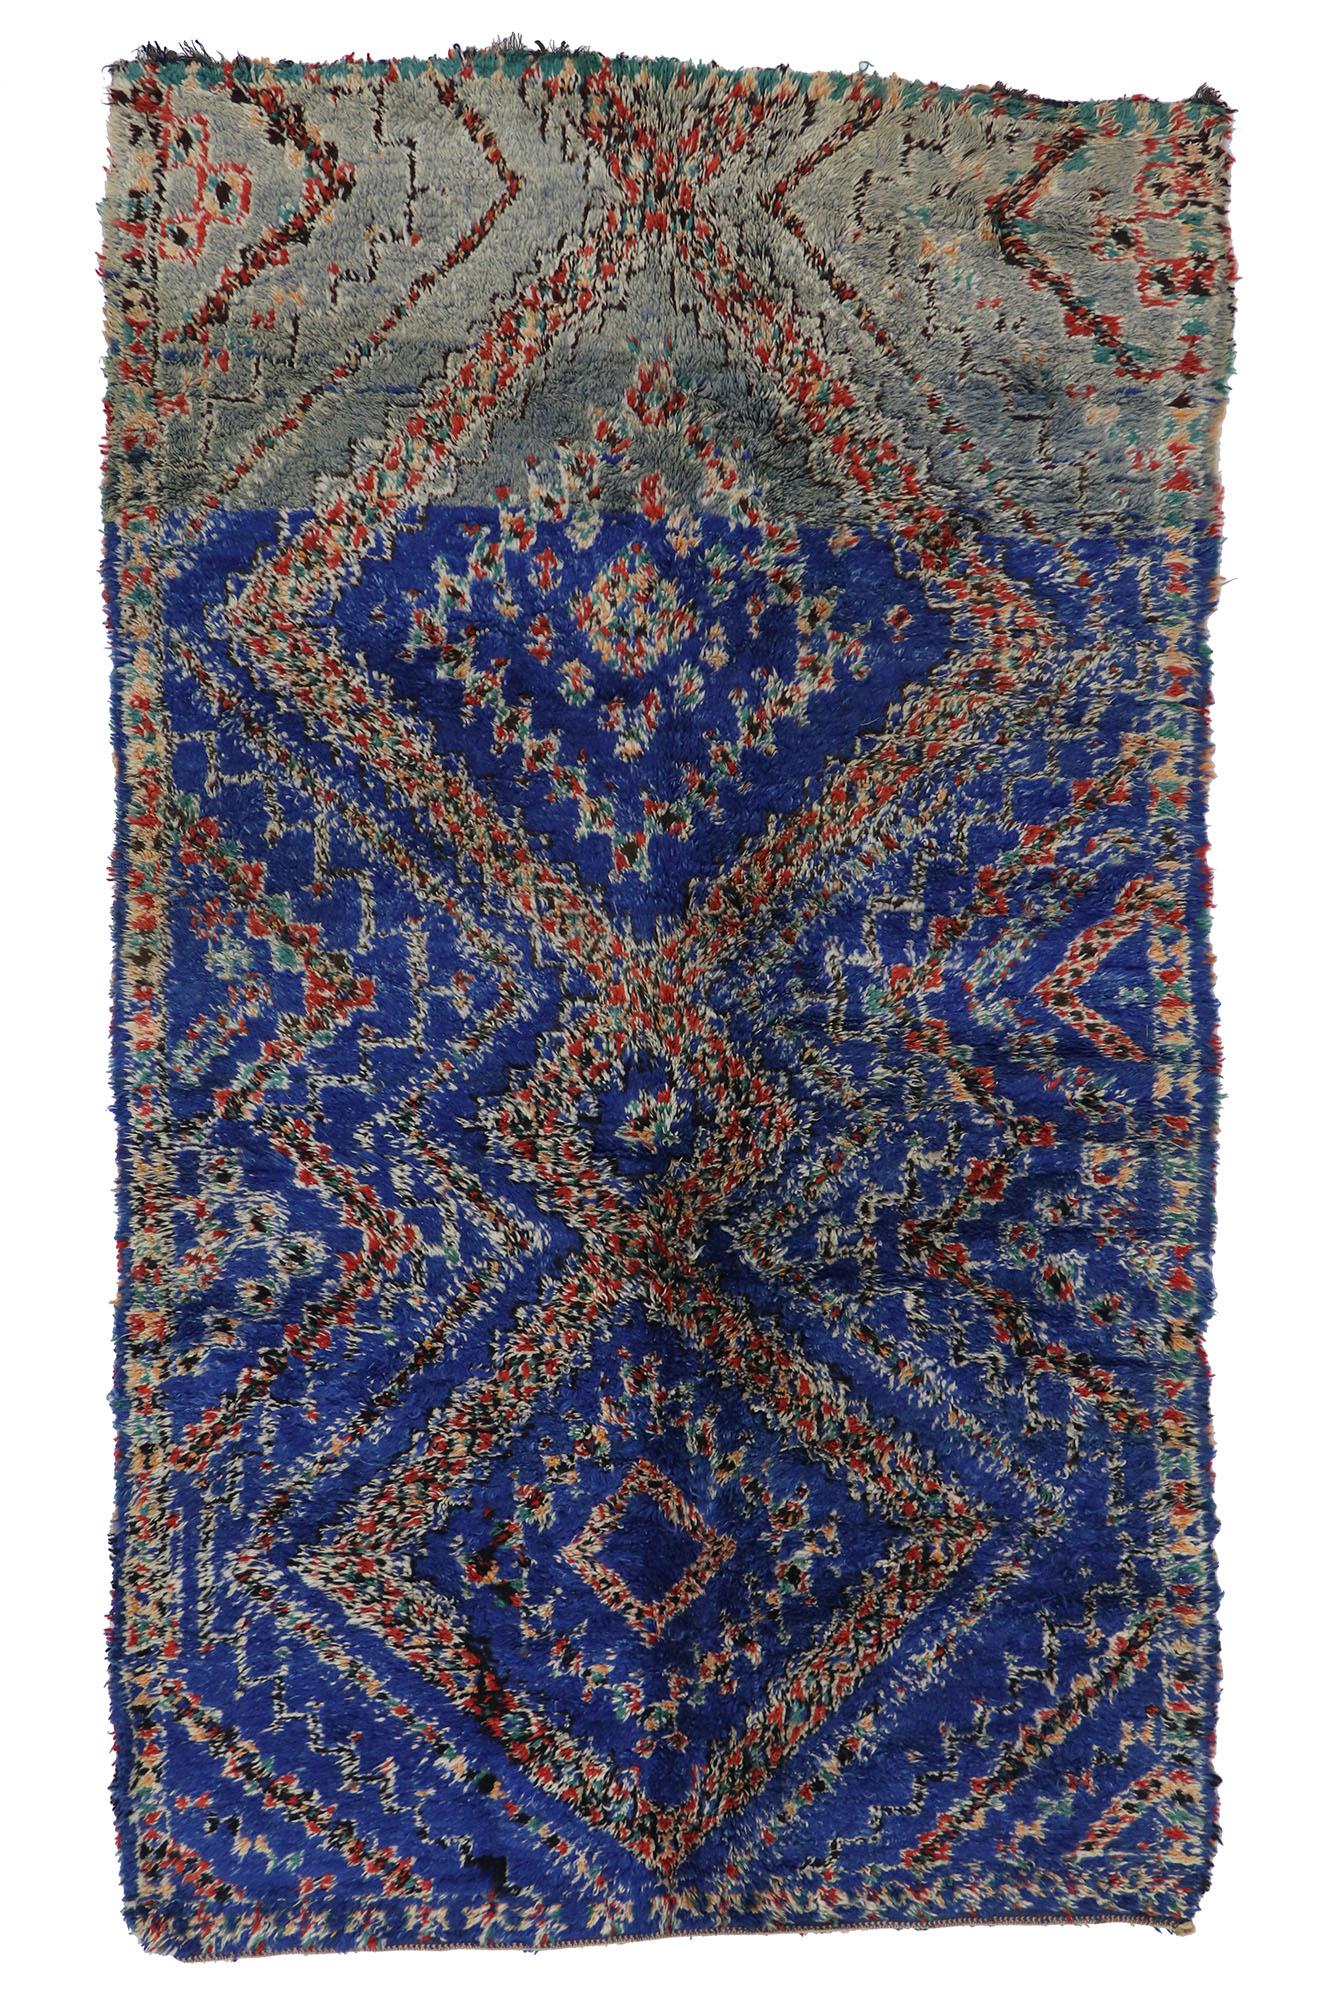 Vintage Beni MGuild Moroccan Rug, Bold Boho Meets Midcentury Modern For Sale 3